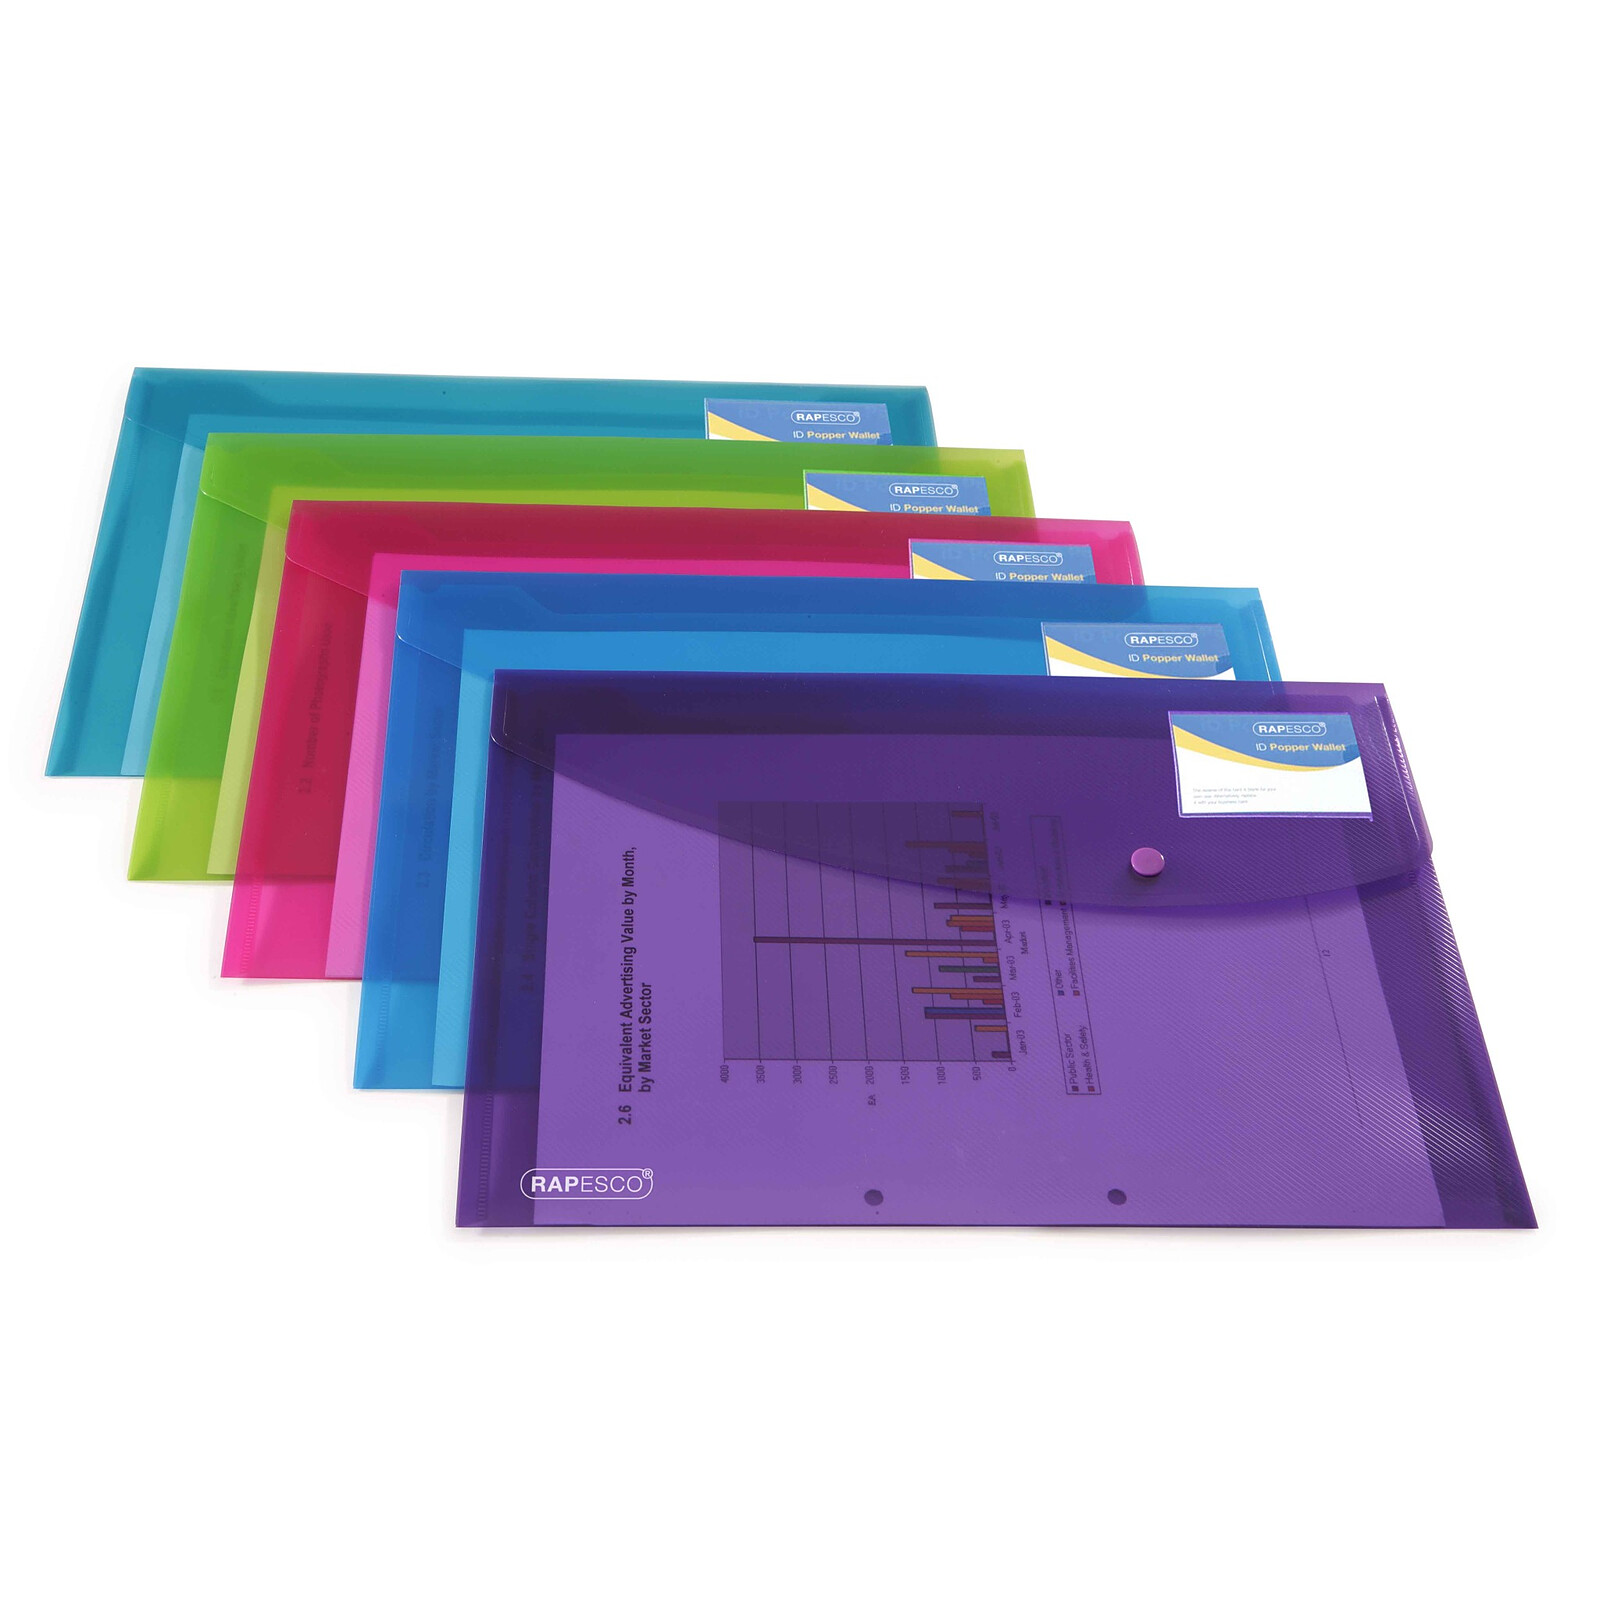 Rapesco Pochette Porte-documents avec Bouton Pression Transparentes A5 Lot de 5 & Lot de 5 Porte-documents DL Vives Transparentes Couleurs Assorties 